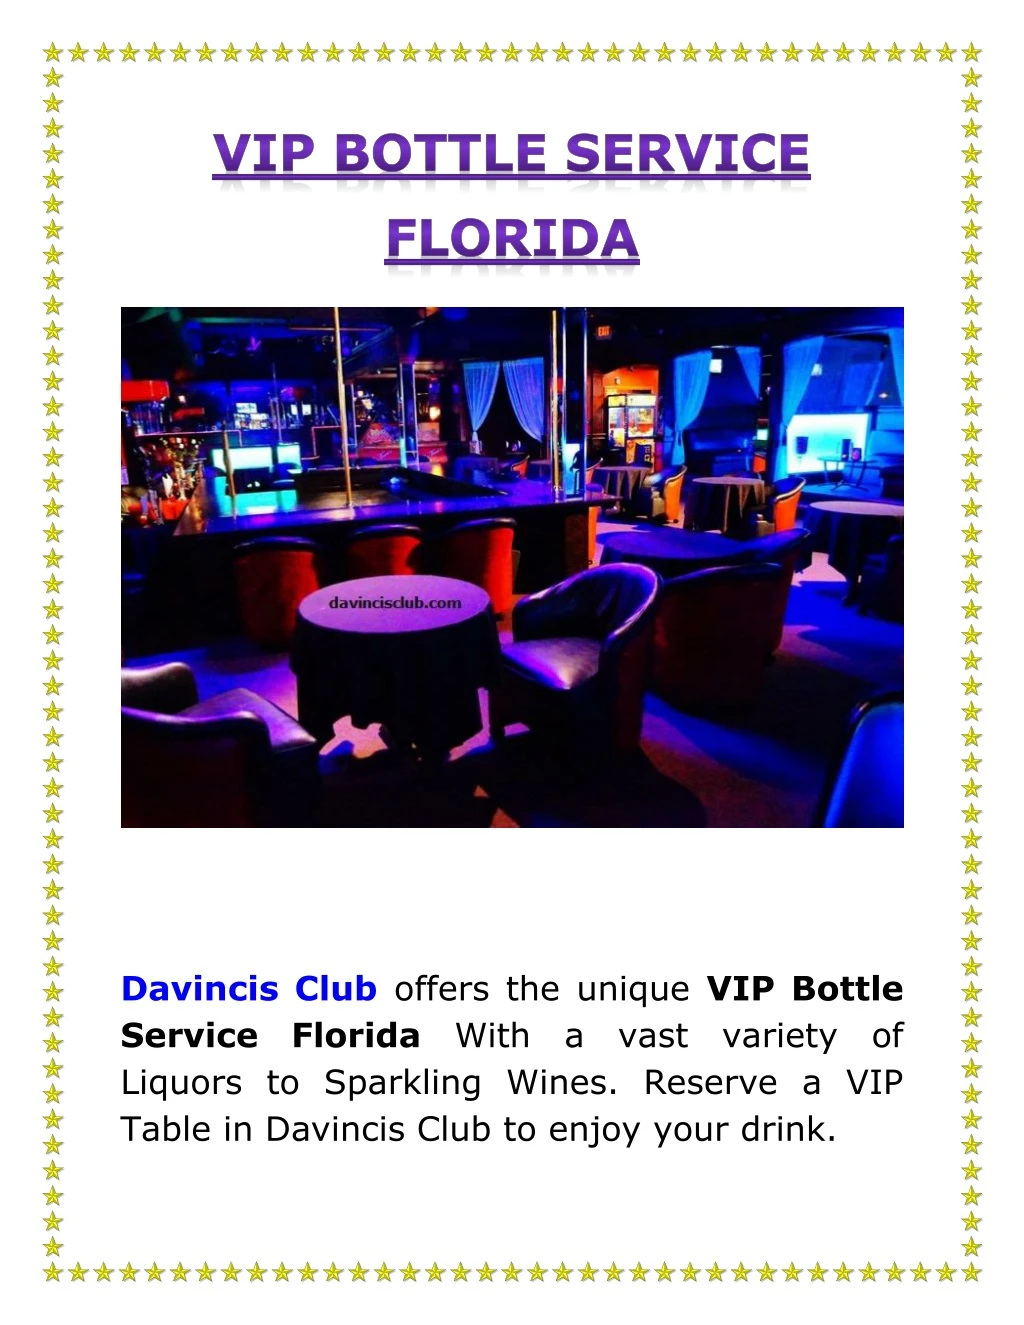 davincis club offers the unique vip bottle